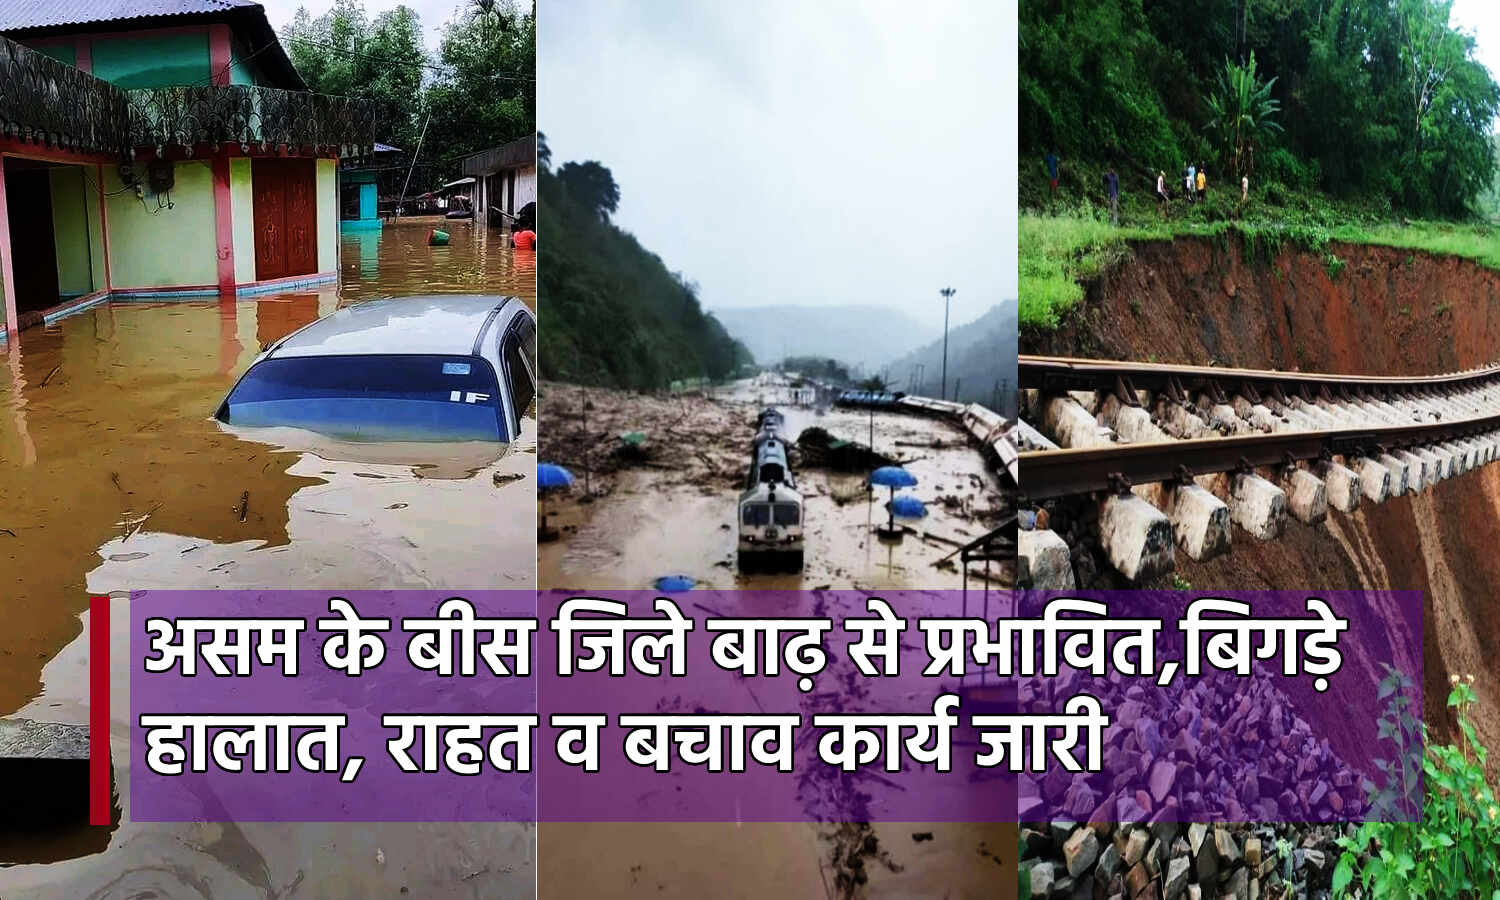 Asam Flood : लगातार बारिश के बाद बाढ़ से बिगड़े असम के हालात, 20 से ज्यादा जिलों की आबादी प्रभावित, राहत-बचाव कार्य जारी